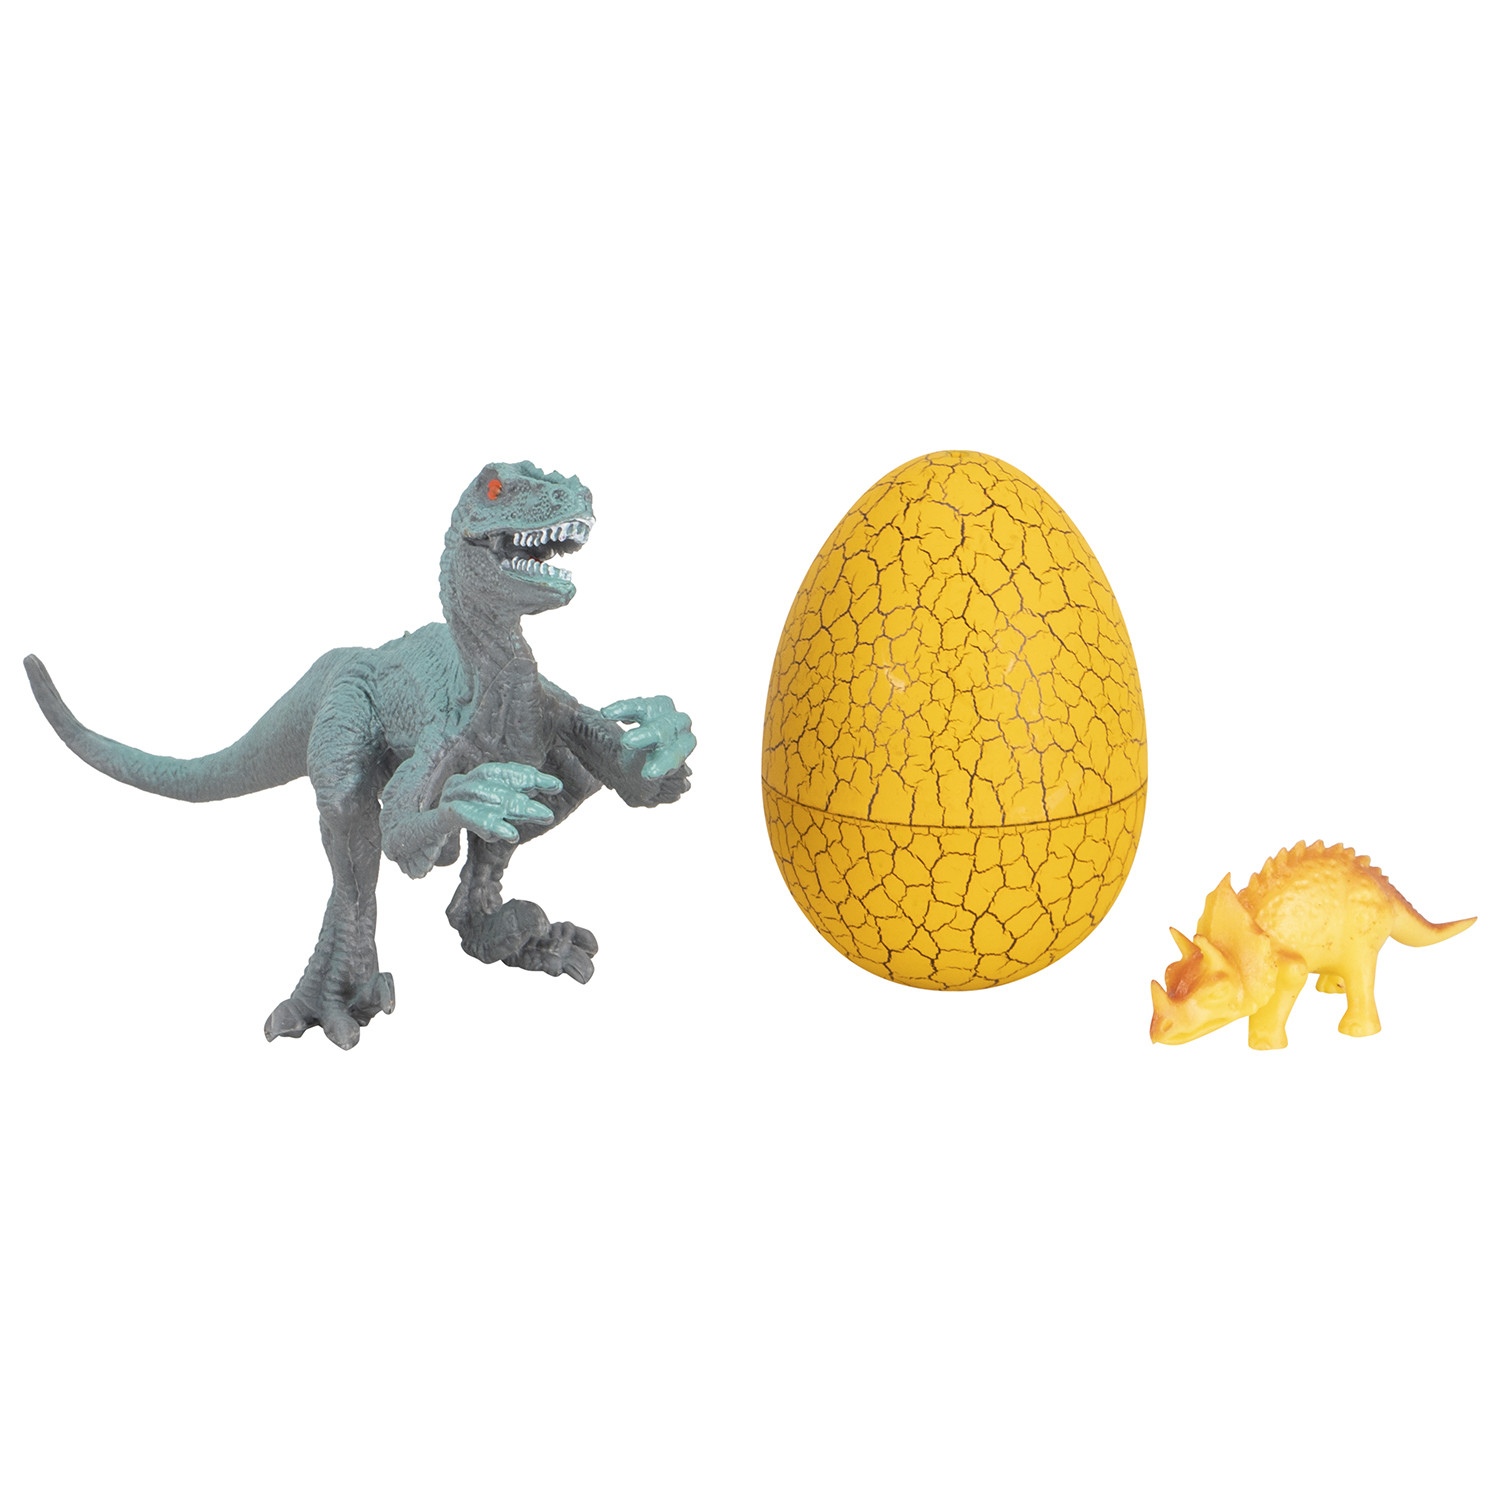 Everyday 2 in 1 Dinosaur Family Egg Image 2